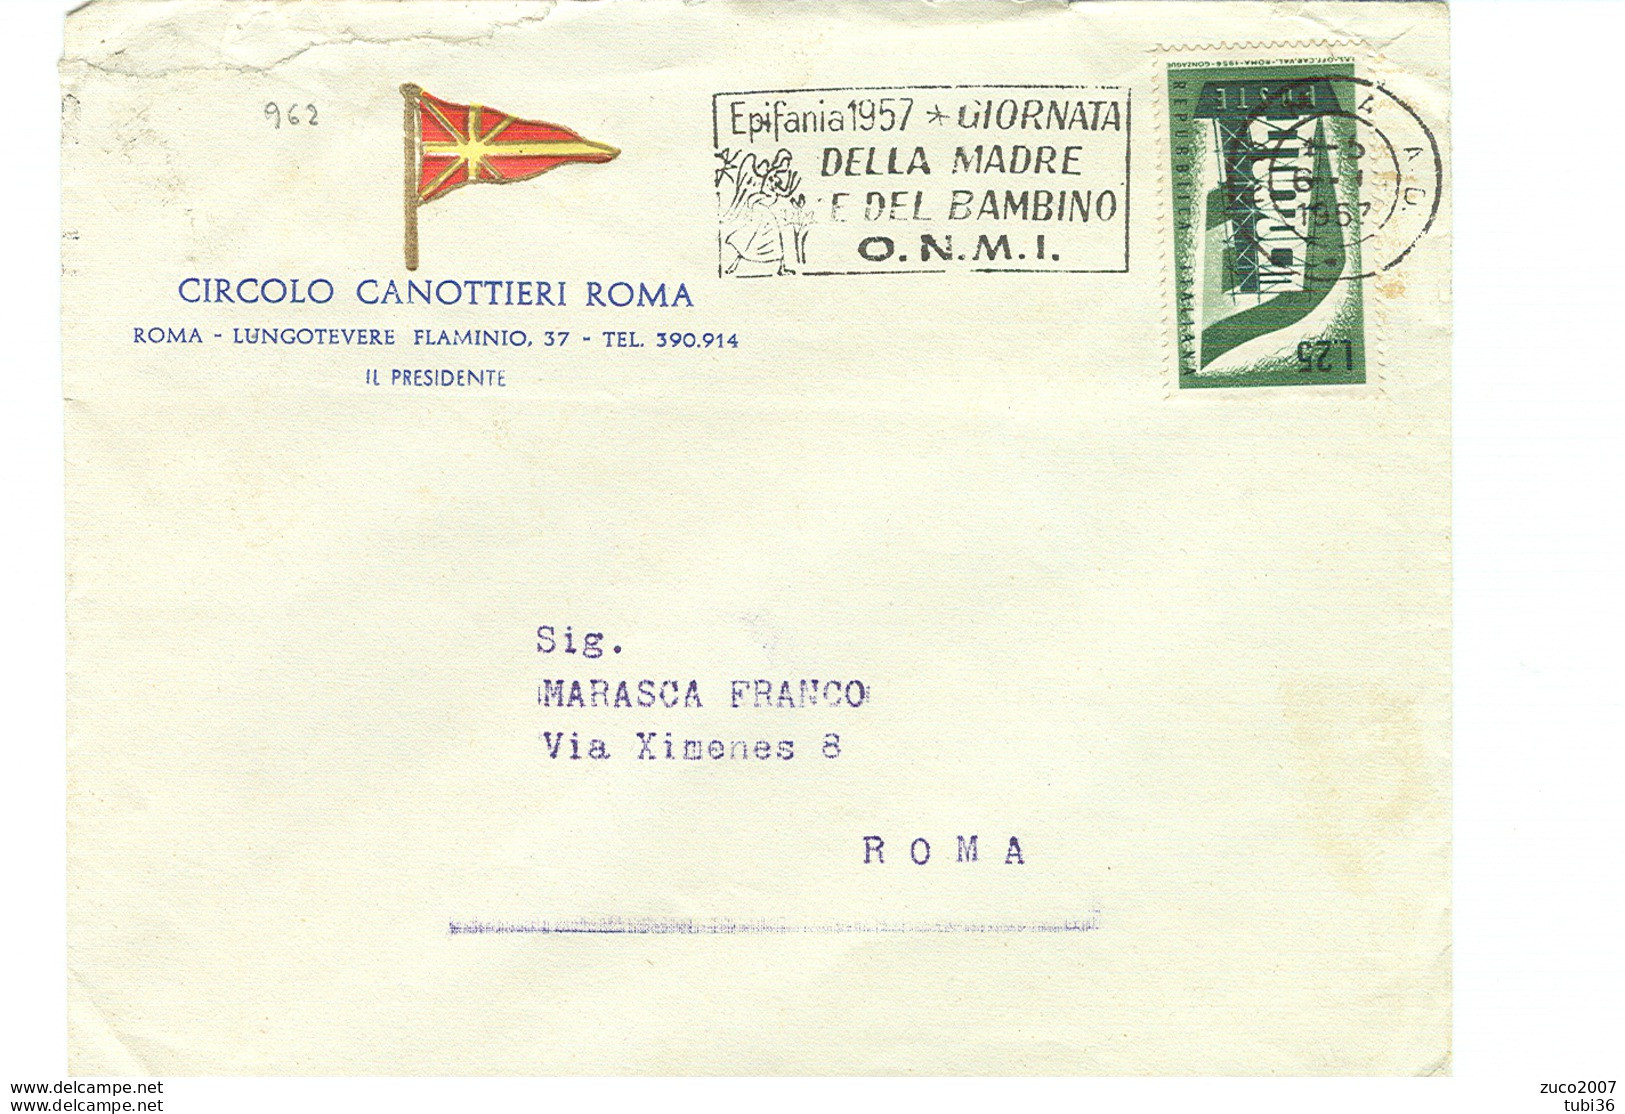 EPIFANIA 1957, GIORNATA DELLA MADRE E DEL BAMBINO- O.N.M.I.- TIMBRO POSTE ROMA TARGHETTA,1957,CIRCOLO CANOTTIERI,ROMA, - Día De La Madre